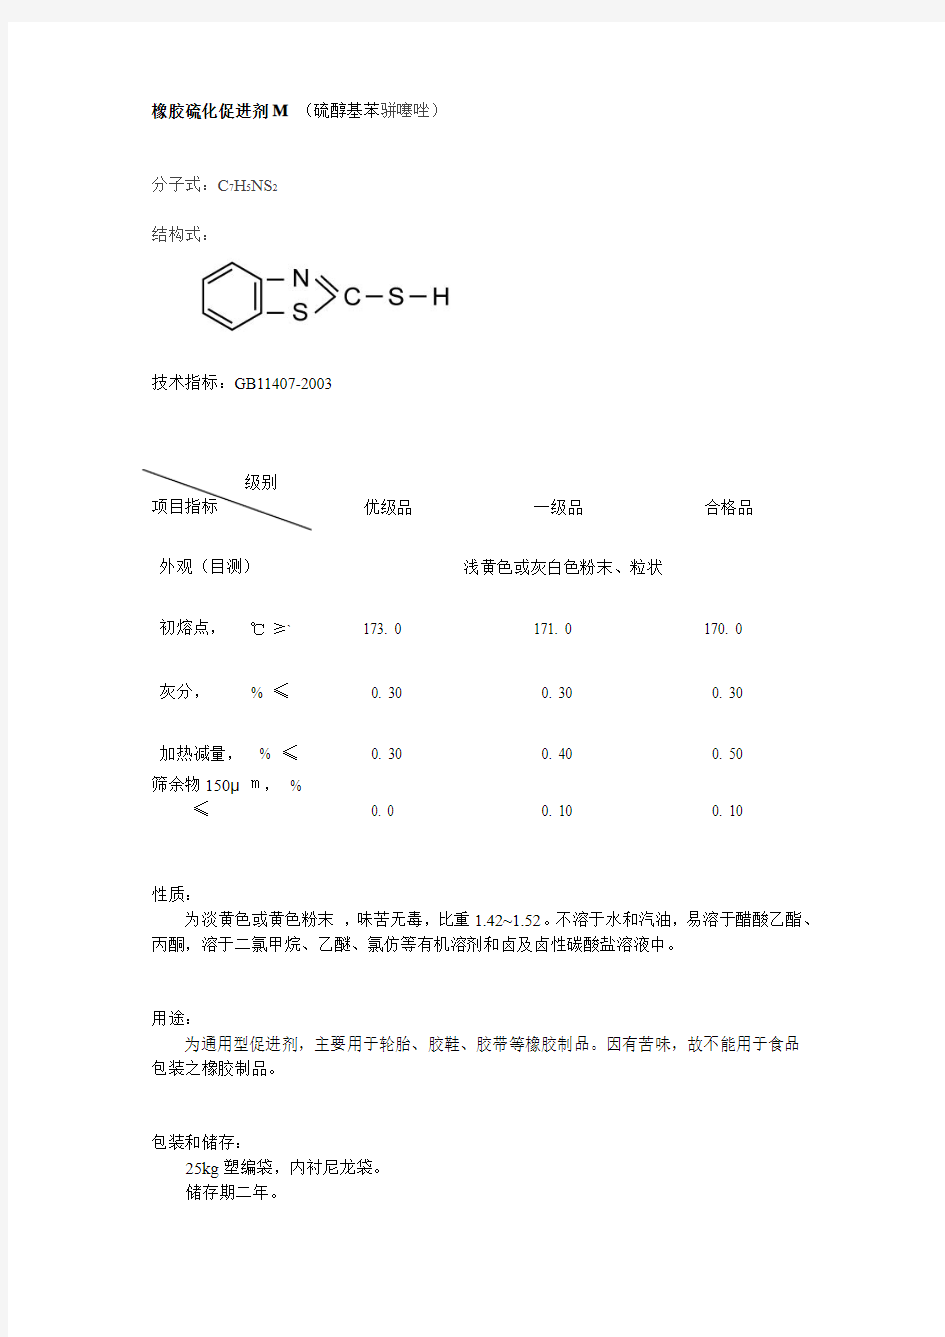 橡胶硫化促进剂M